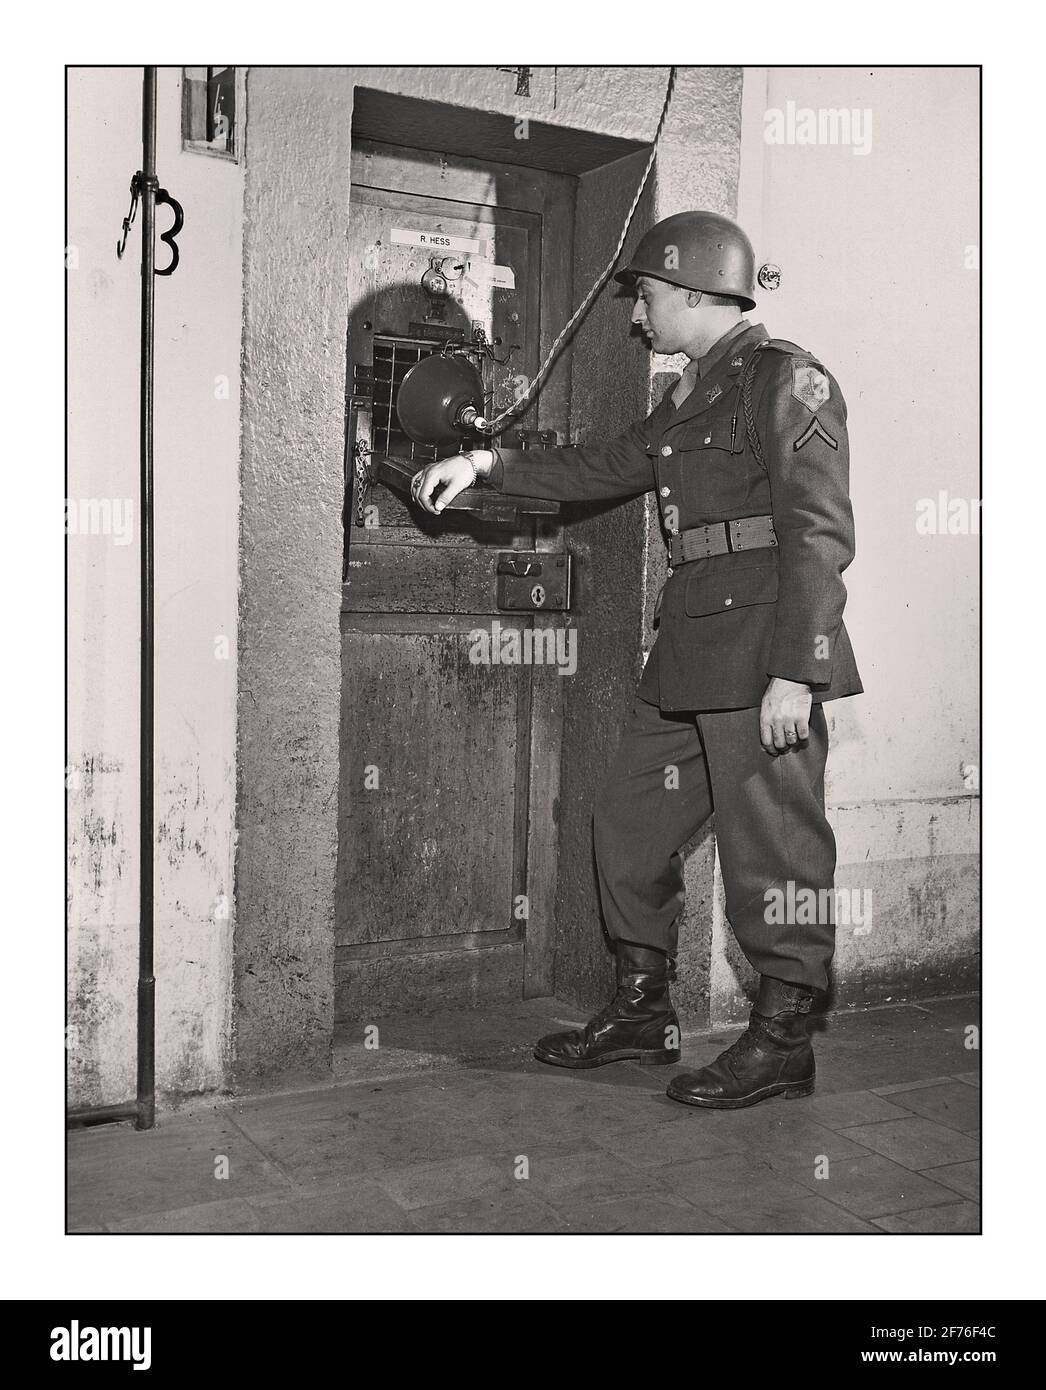 NUREMBERG RUDOLF HESS CELLULE DE PRISON le soldat de l'armée américaine est permanent Garde à l'extérieur de la cellule de la prison de Nuremberg du dirigeant nazi Rudolf Hess, procès allemand pour crimes de guerre de la Seconde Guerre mondiale 1945 Banque D'Images